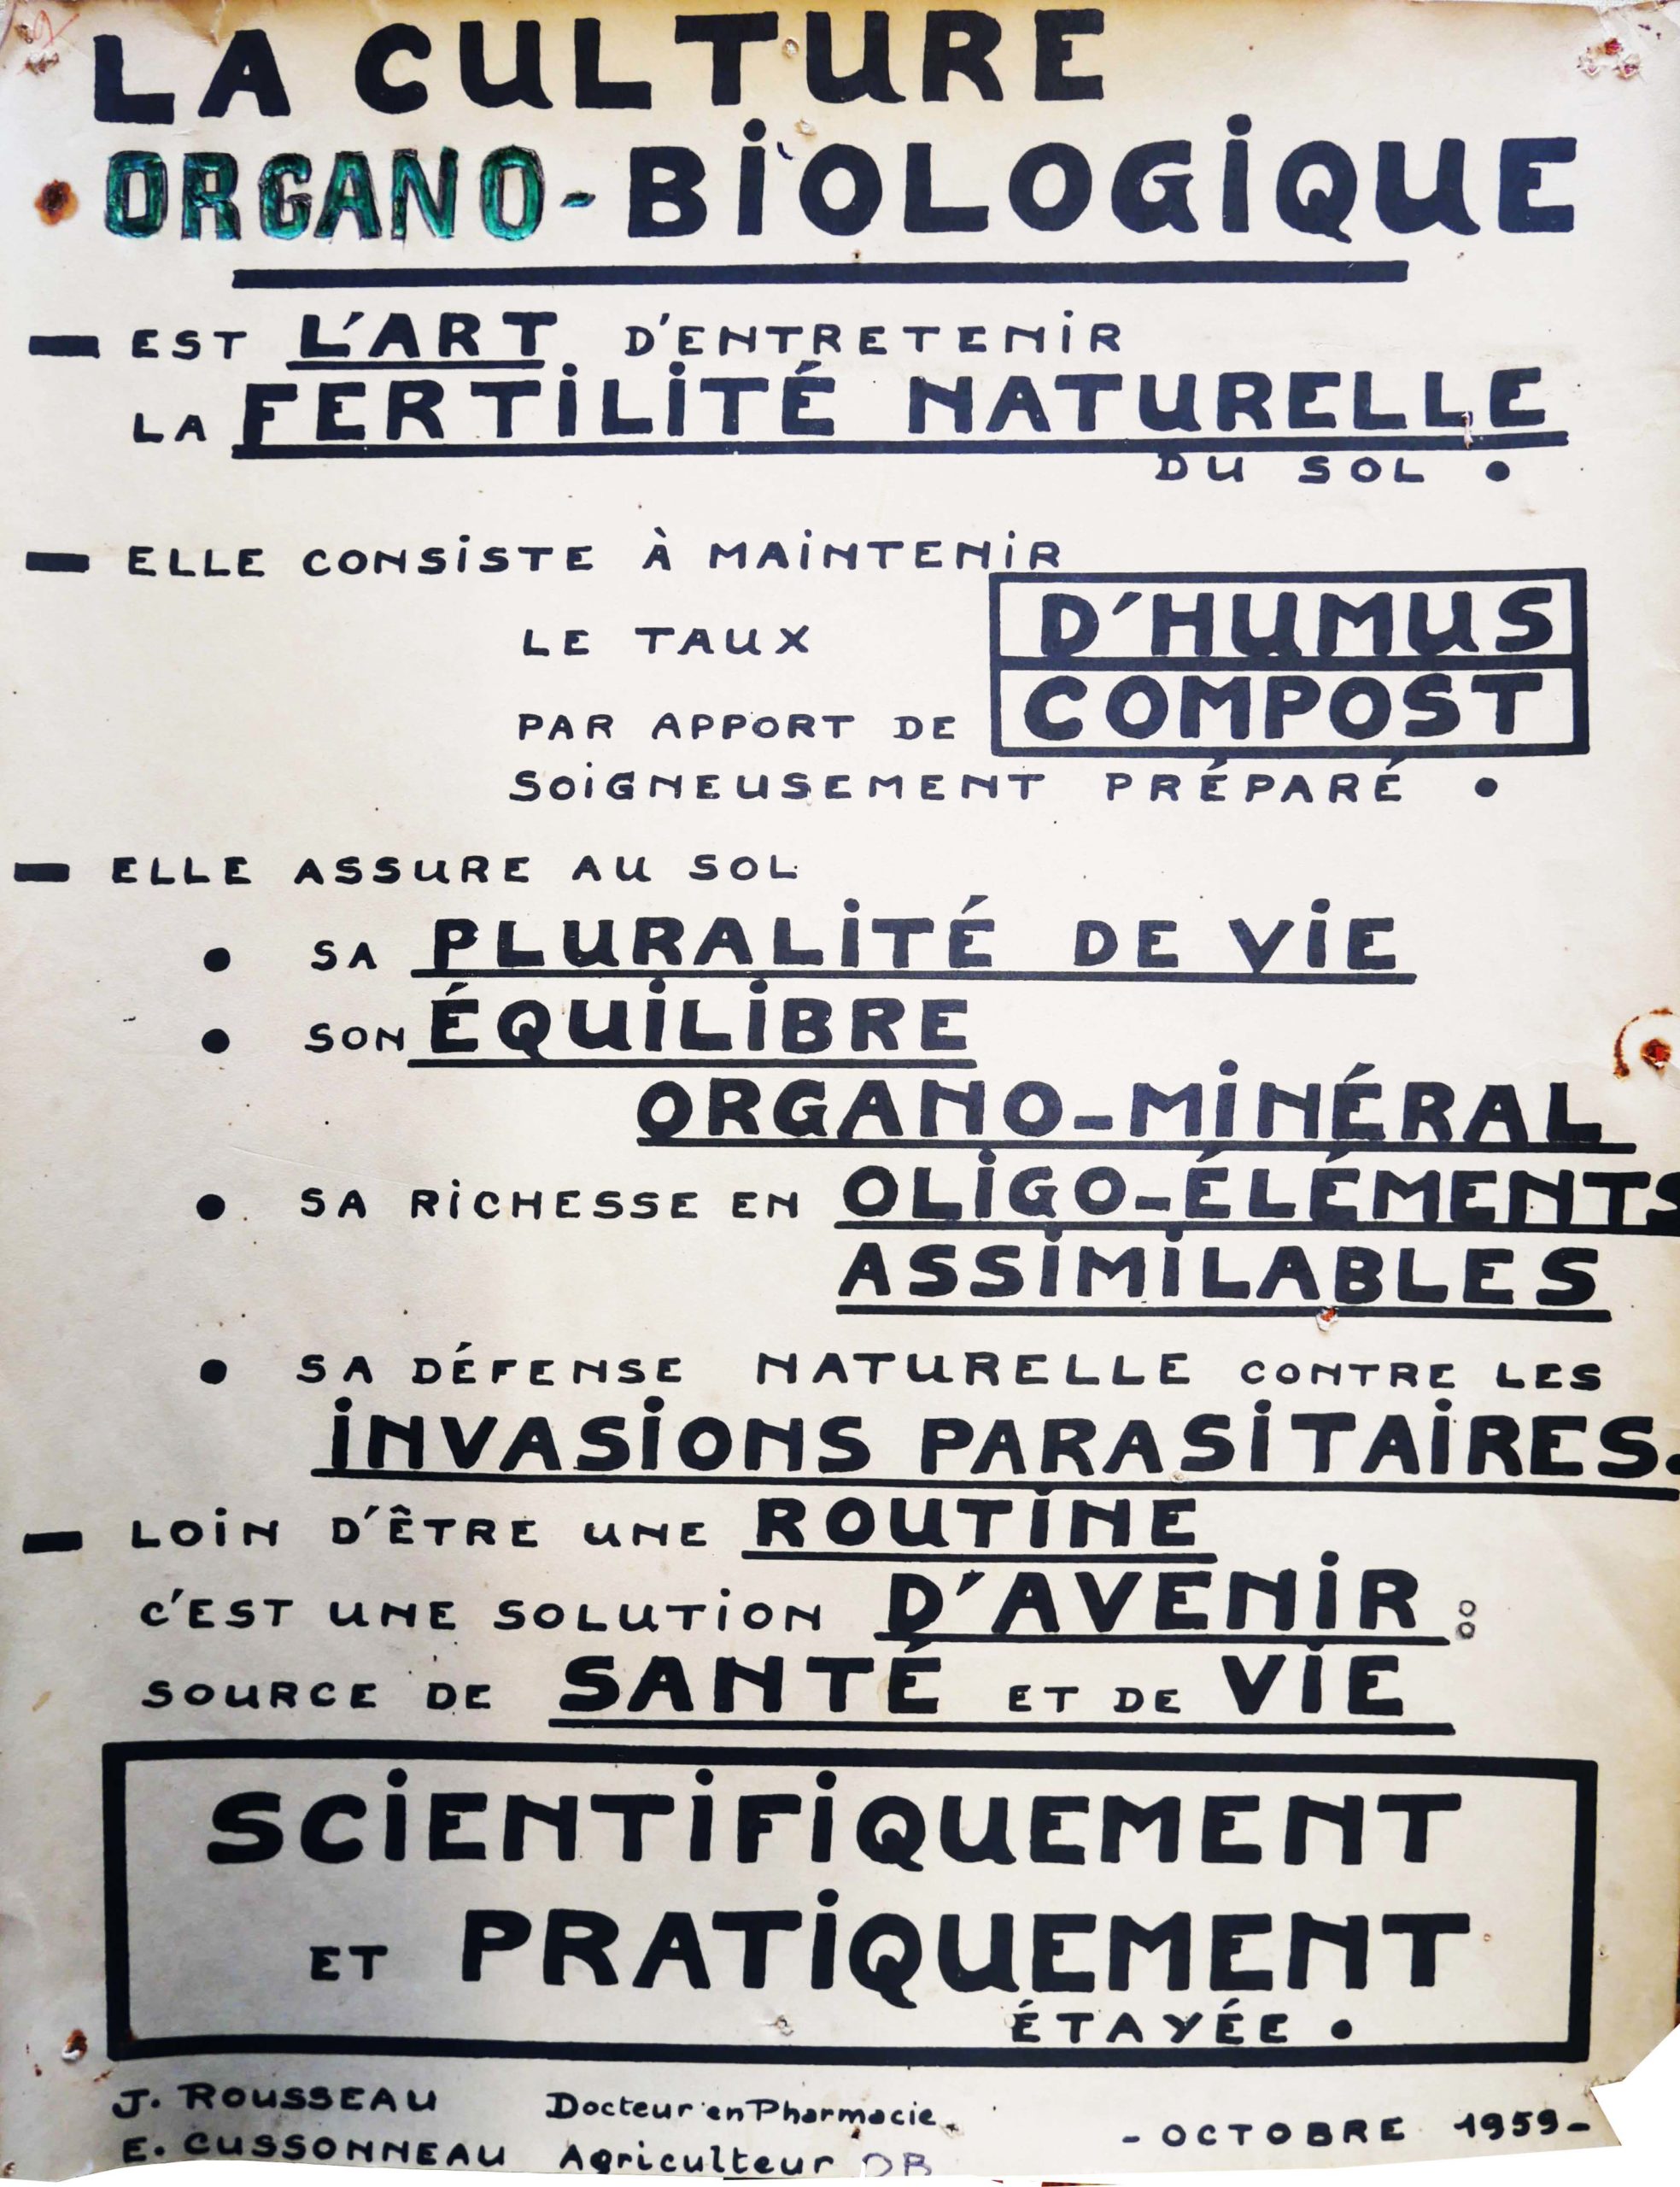 Support pédagogique réalisé par Jeanne Rousseau. Edmond Cussoneau a tenu à ajouter la mention « organo-biologique » sur le support qu’il a conservé